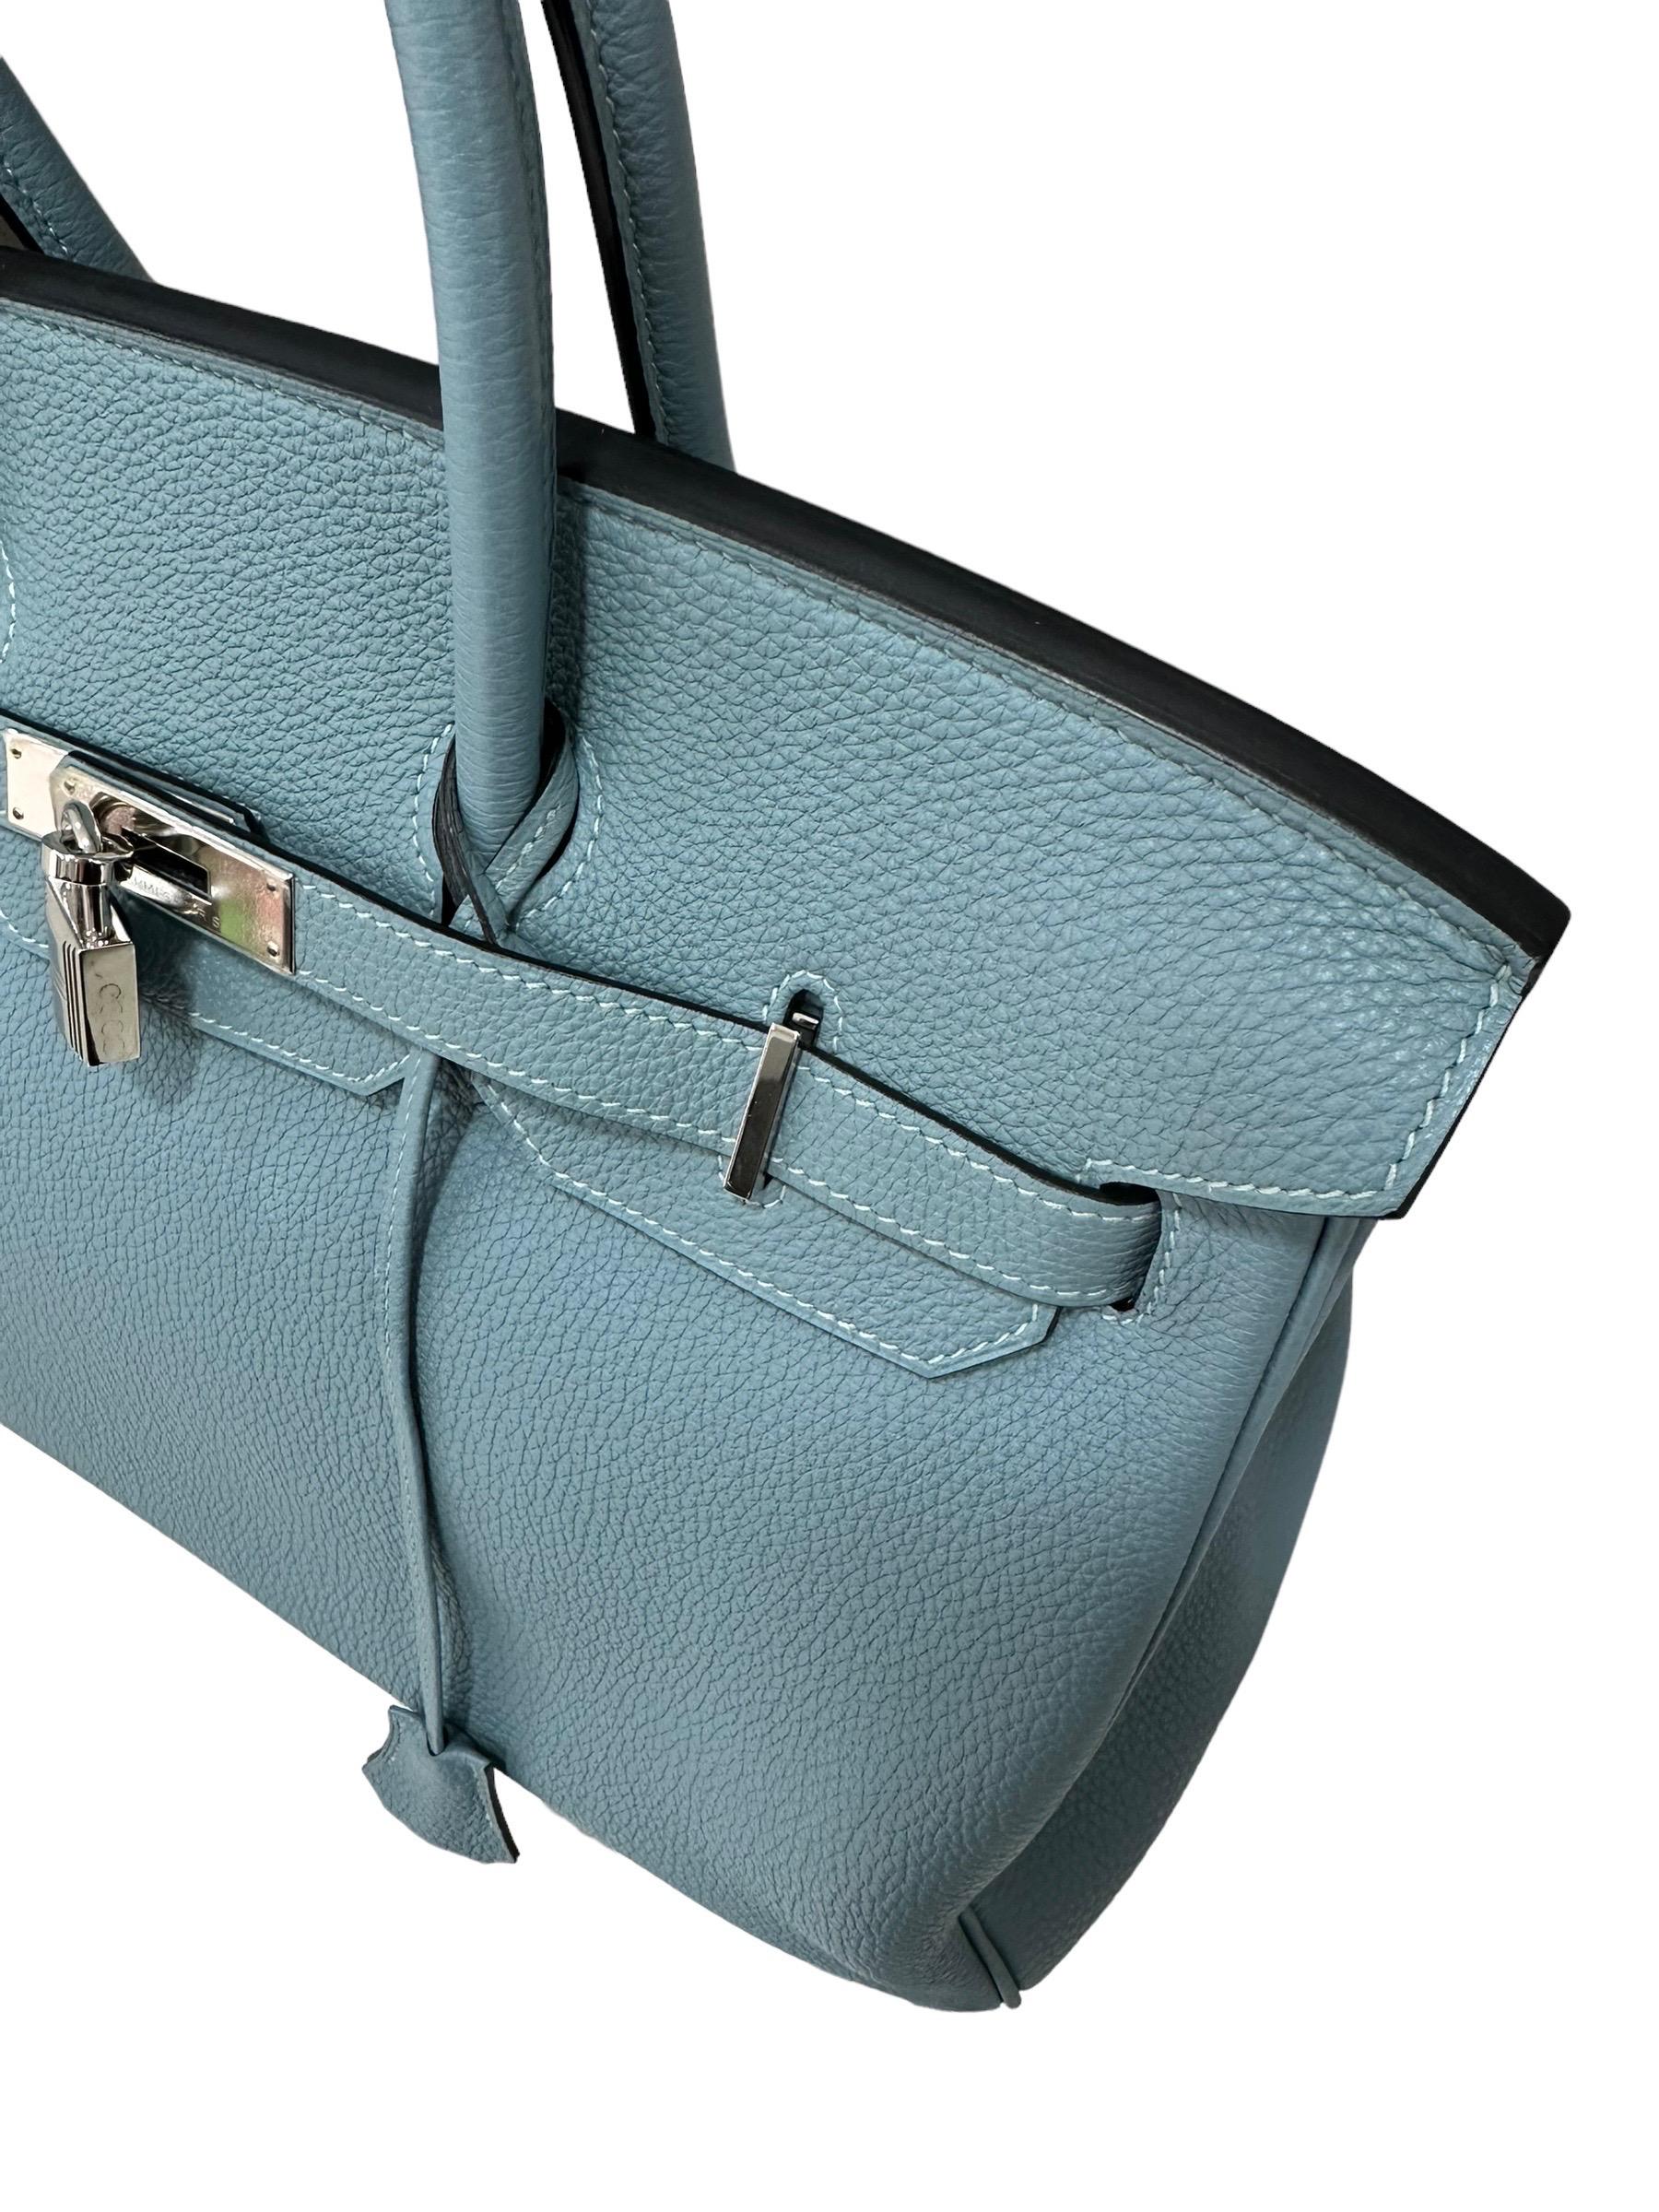 2009 Hermès Birkin 35 Togo Leather Ciel Top Handle Bag For Sale 1